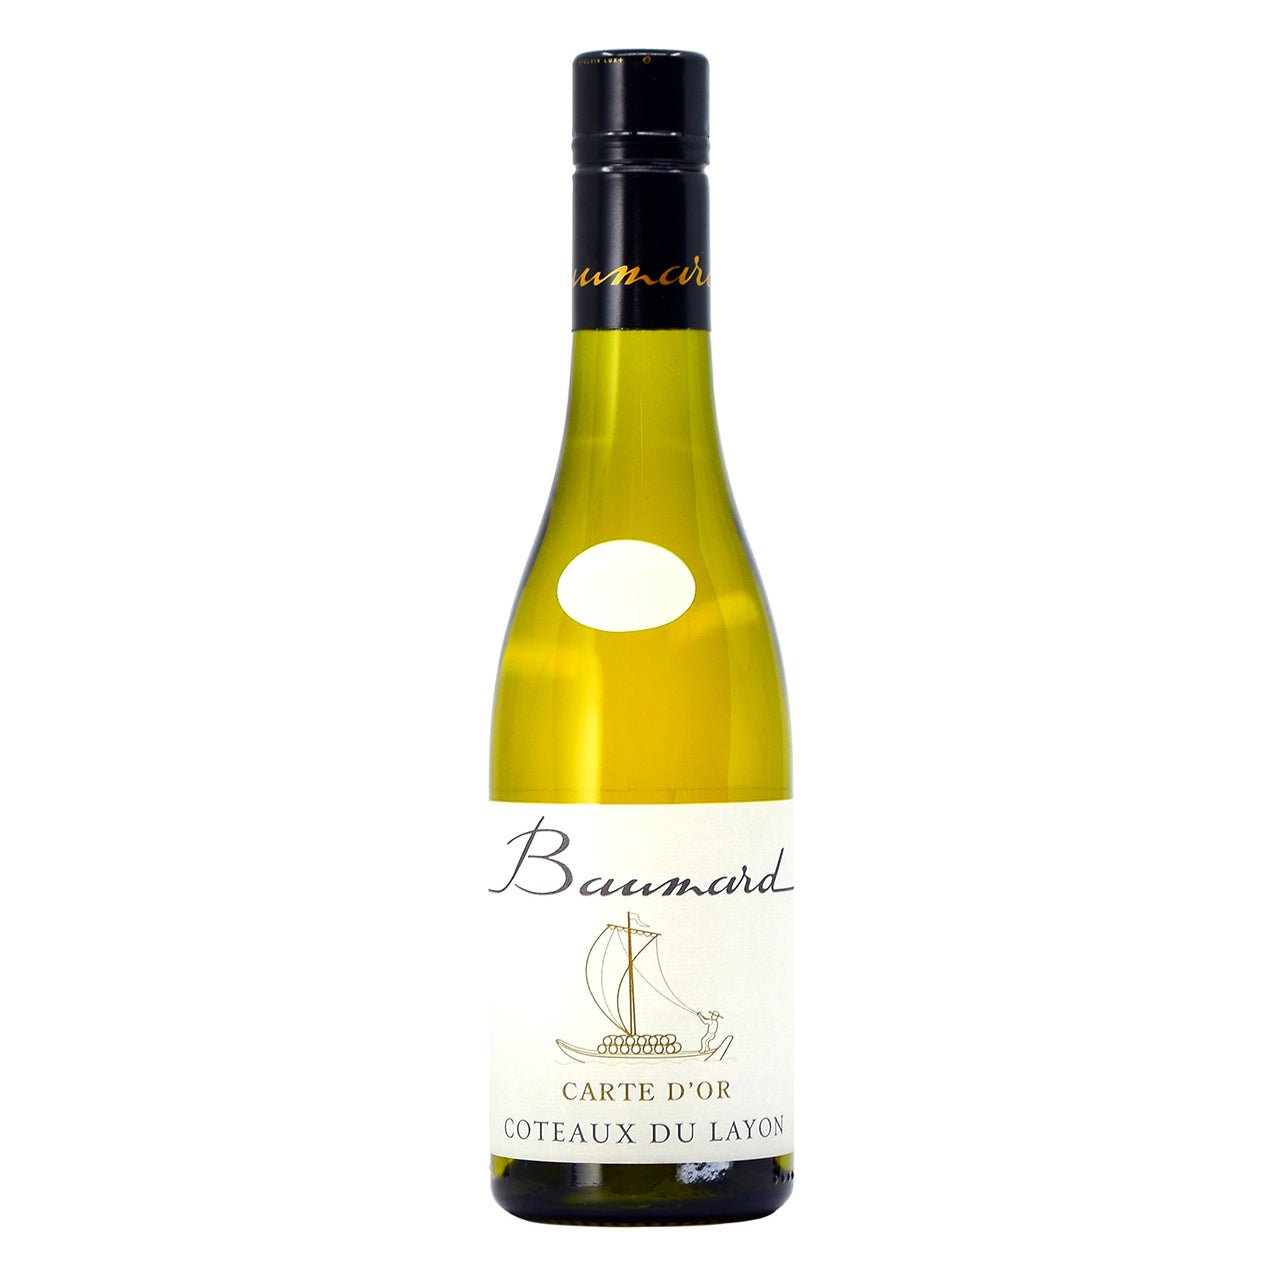 Baumard Coteaux du Layon ‘Carte d’Or’ 2018 - Wine France White - Liquor Wine Cave